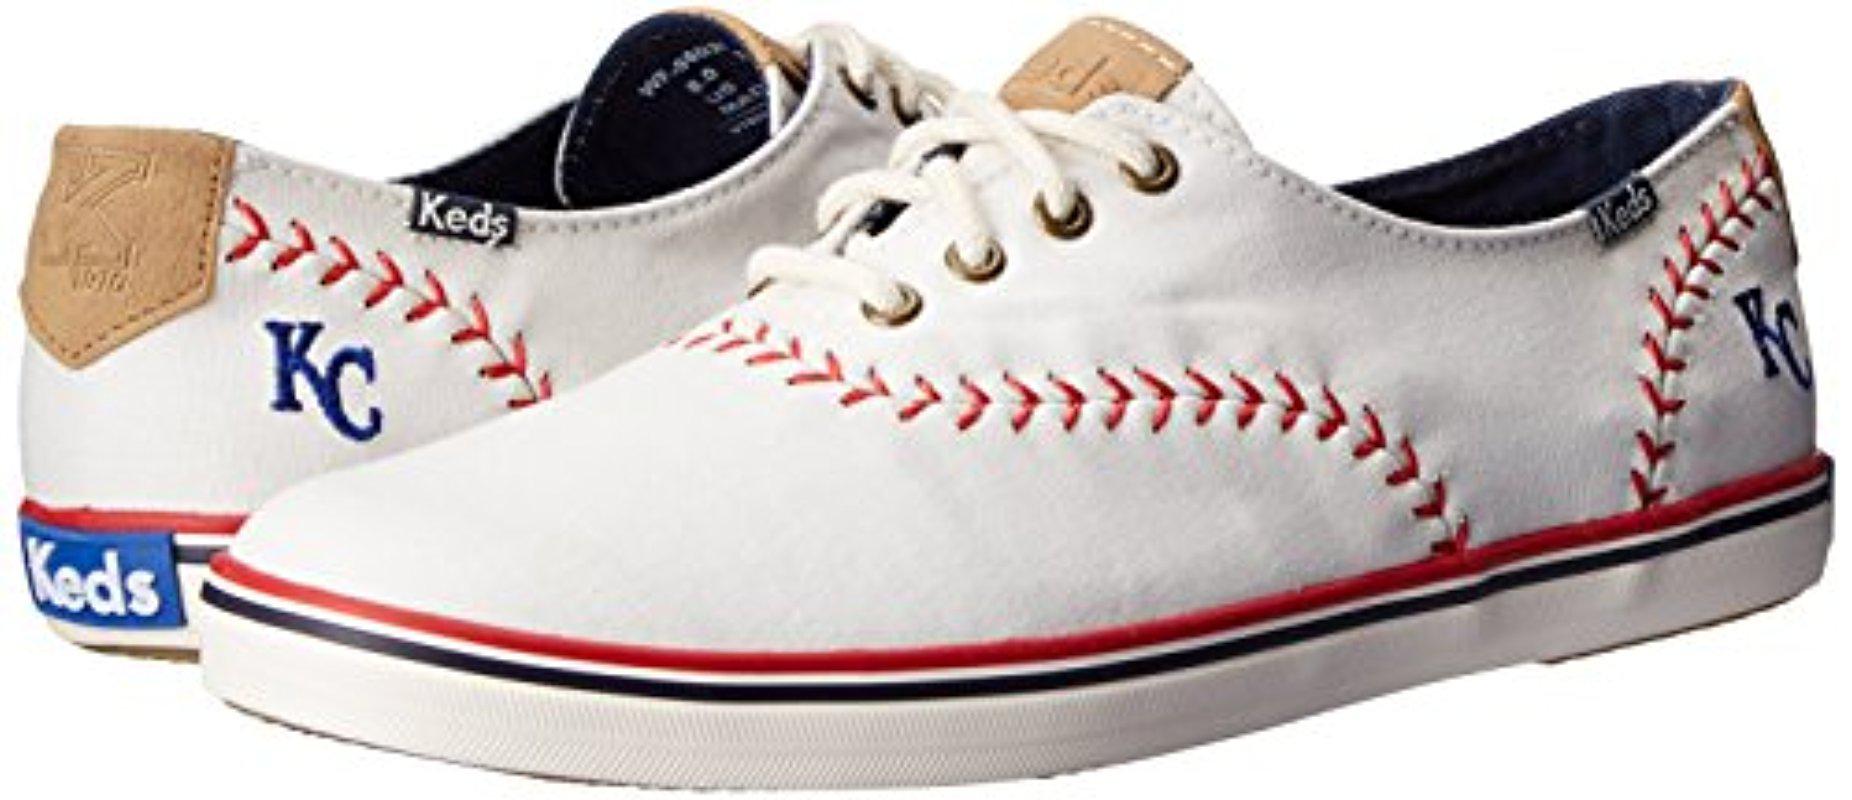 keds baseball shoes